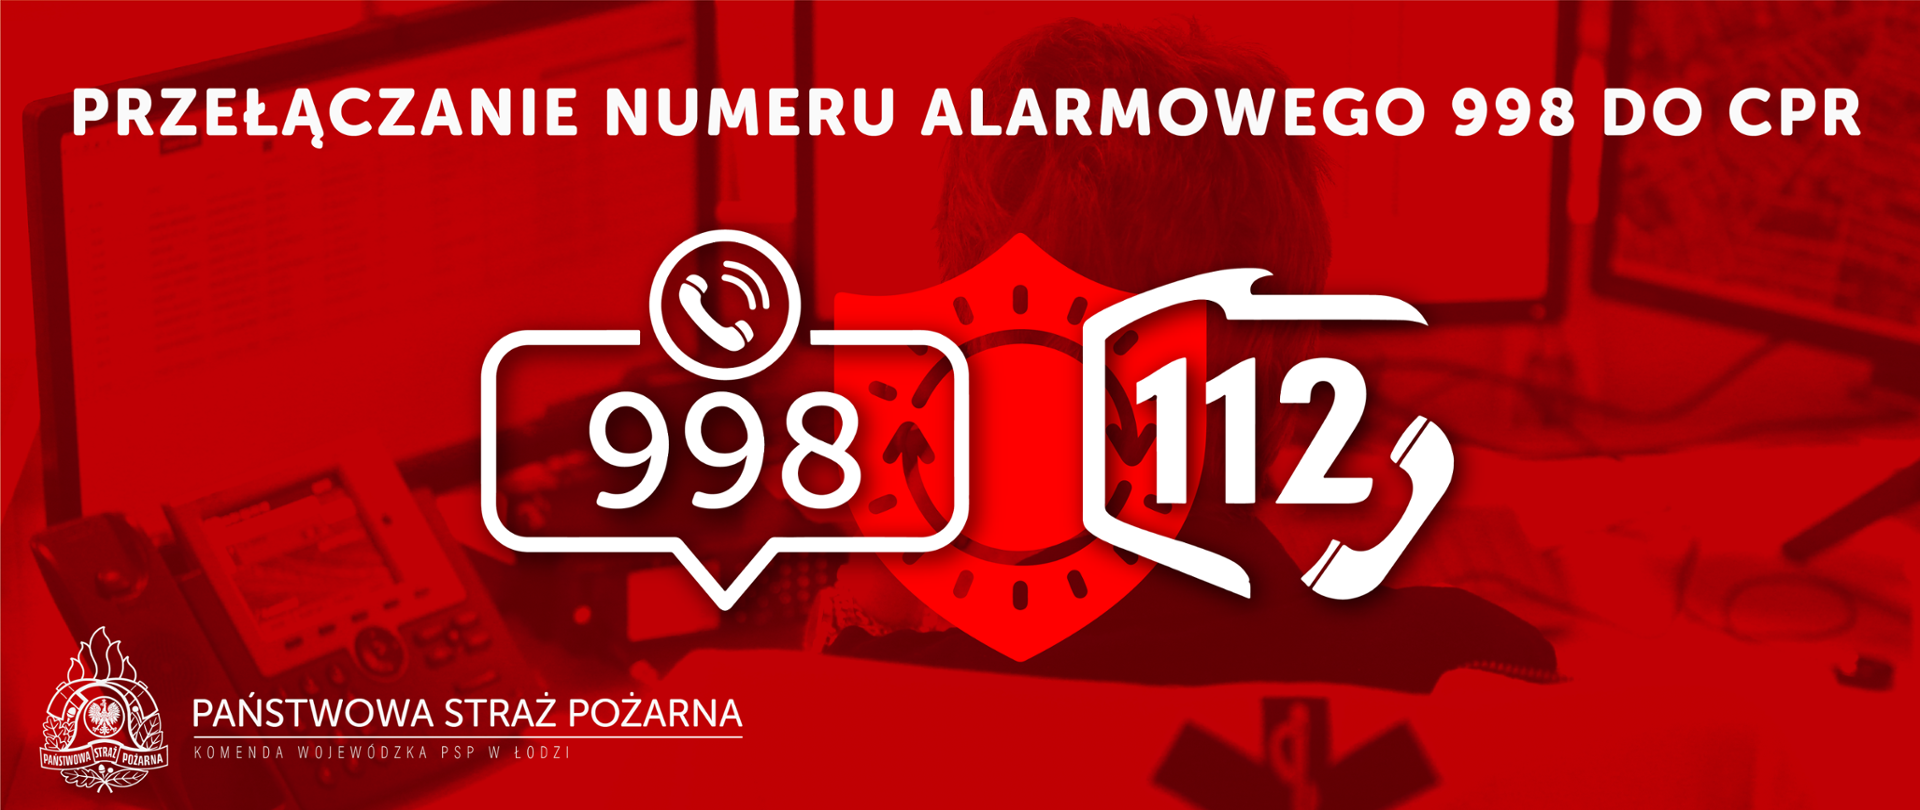 na zdjęciu na czerwonym tle opis Przyłączenie numeru alarmowego 998 do cpr, numery 998 i 112 w centrum logo na dole logo Państwowej Straży Pożarnej